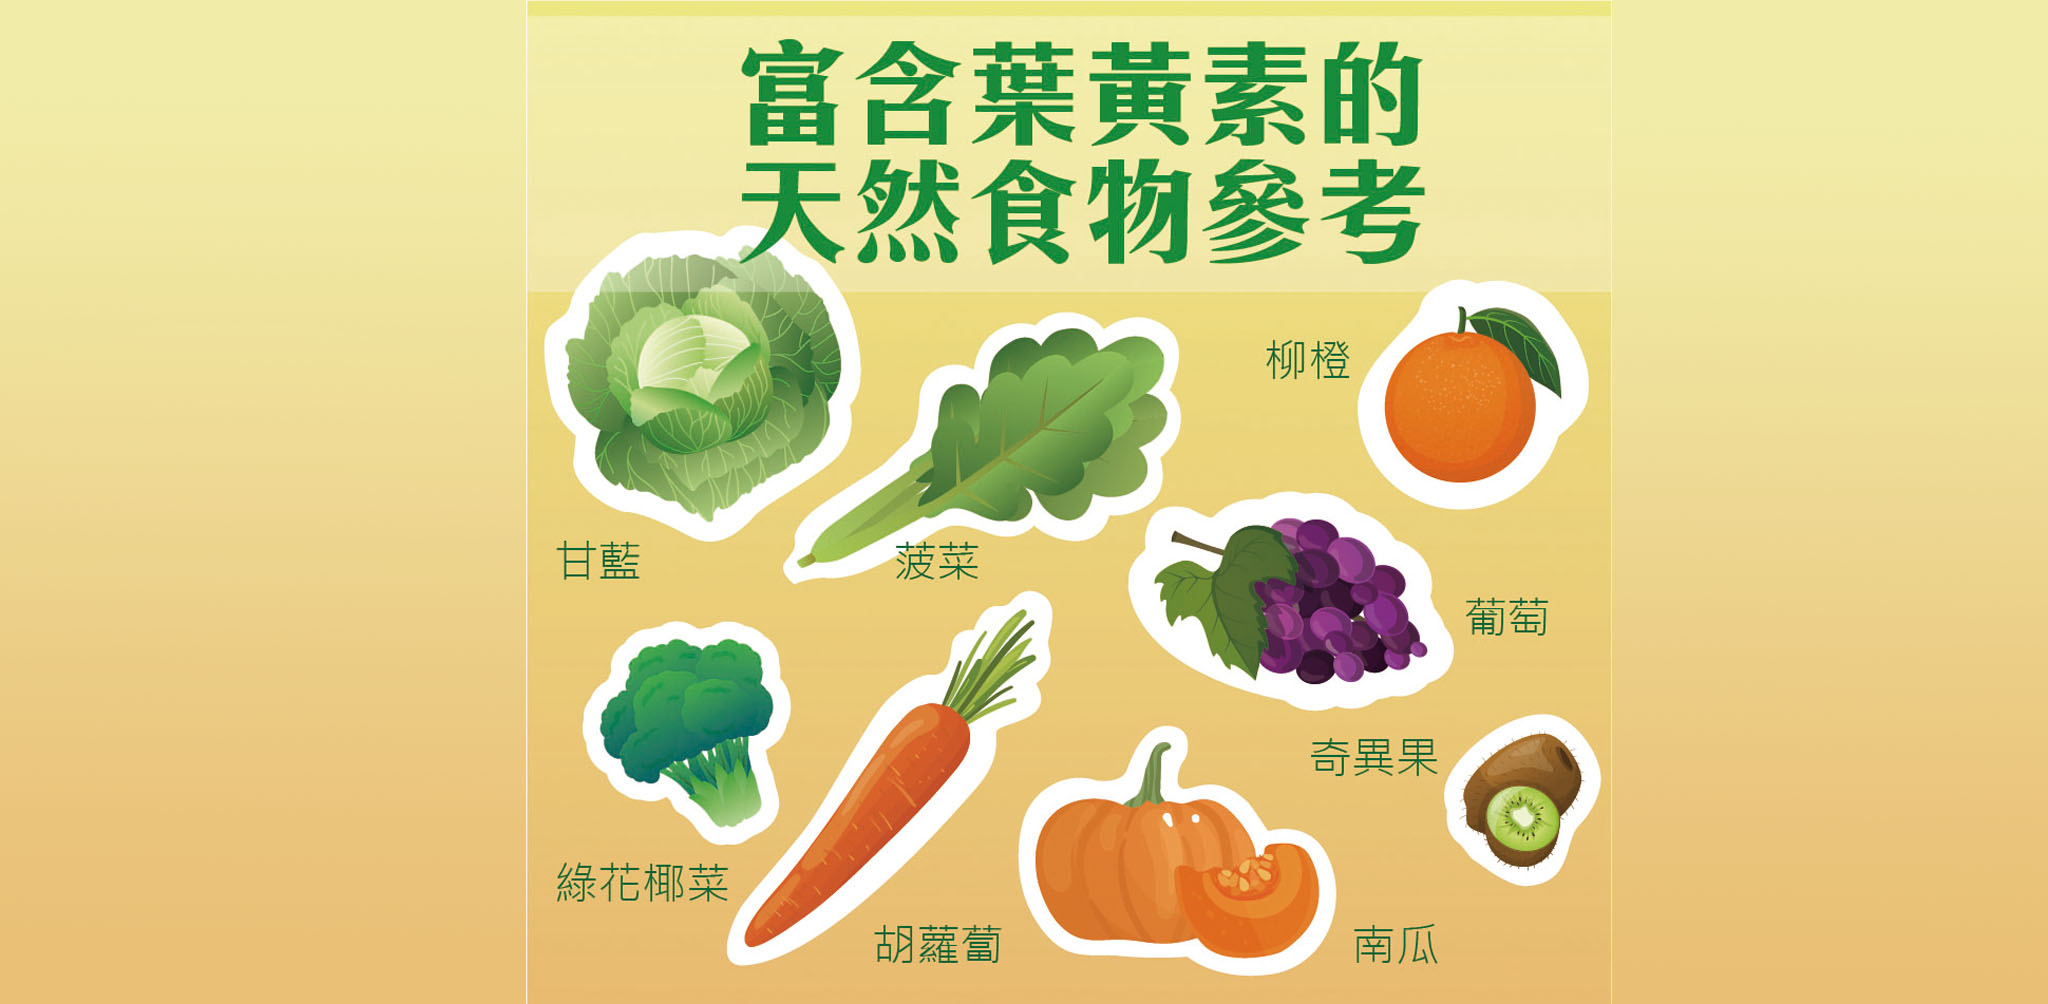 富含葉黃素的天然食物參考：甘藍、菠菜、綠花椰菜、胡蘿蔔、南瓜、柳橙、葡萄、奇異果等。